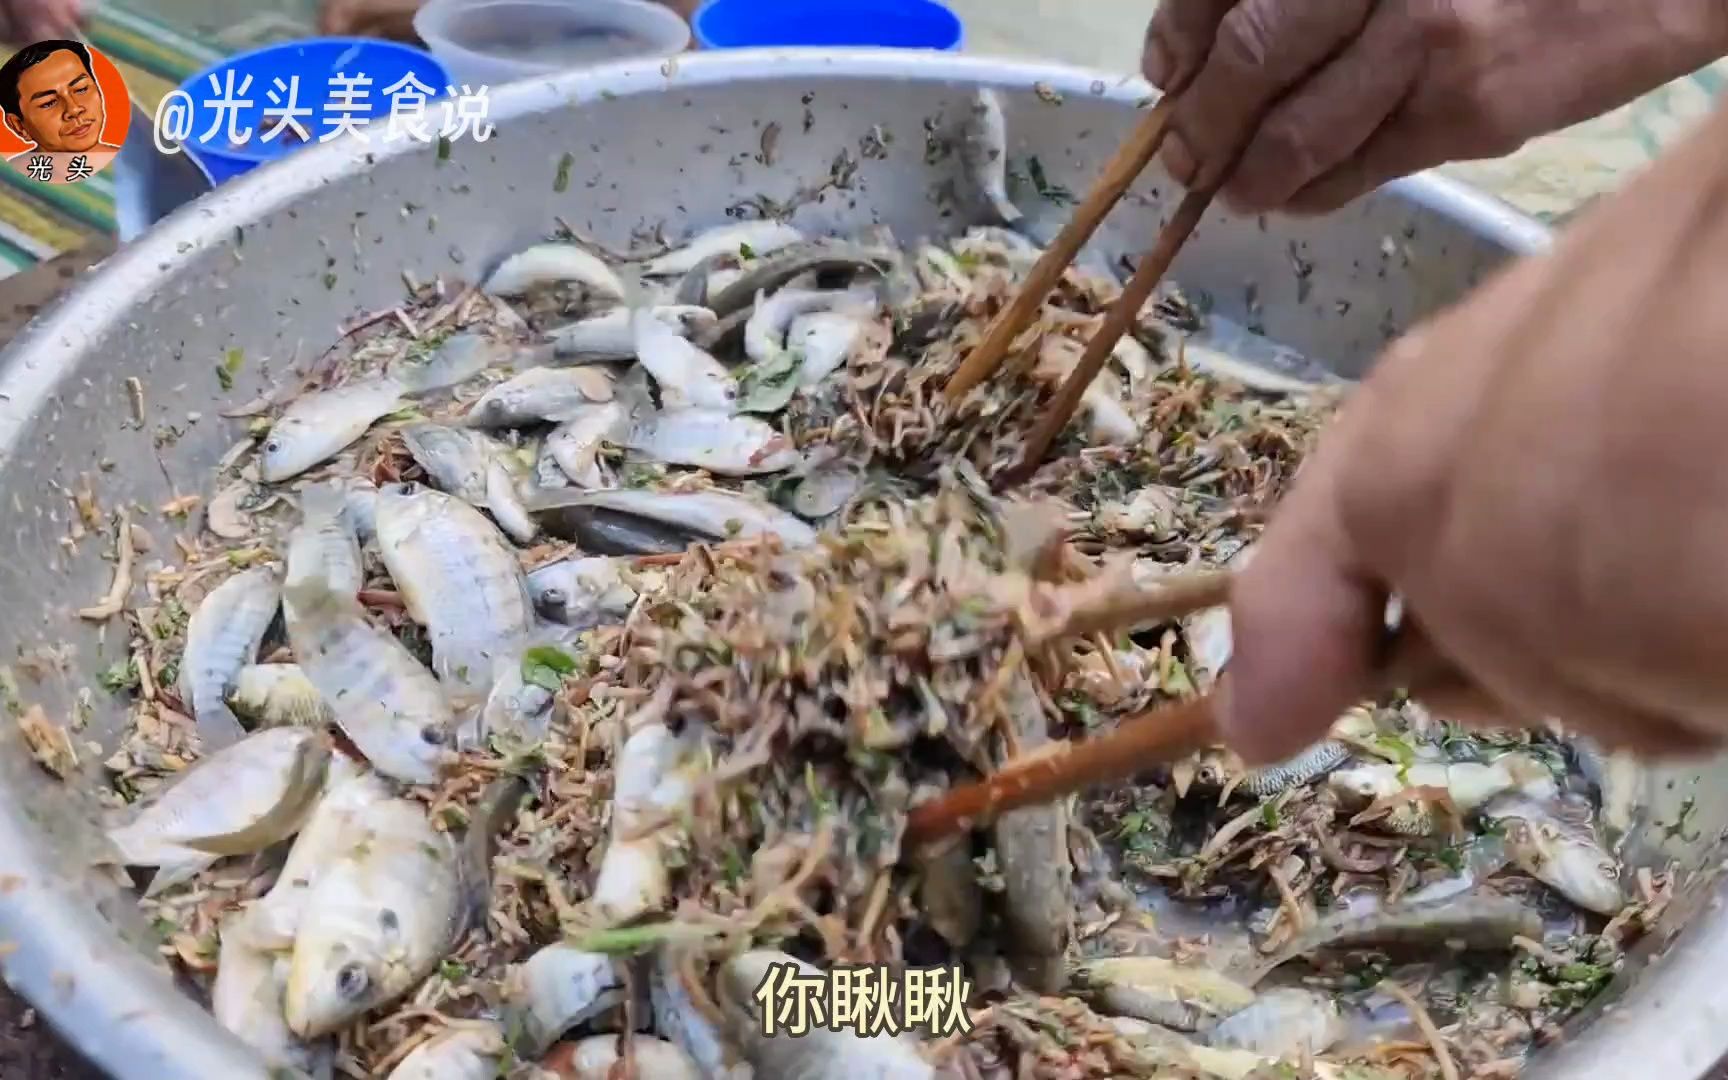 越南当地吃活鱼的习俗不经意让人毛骨悚然